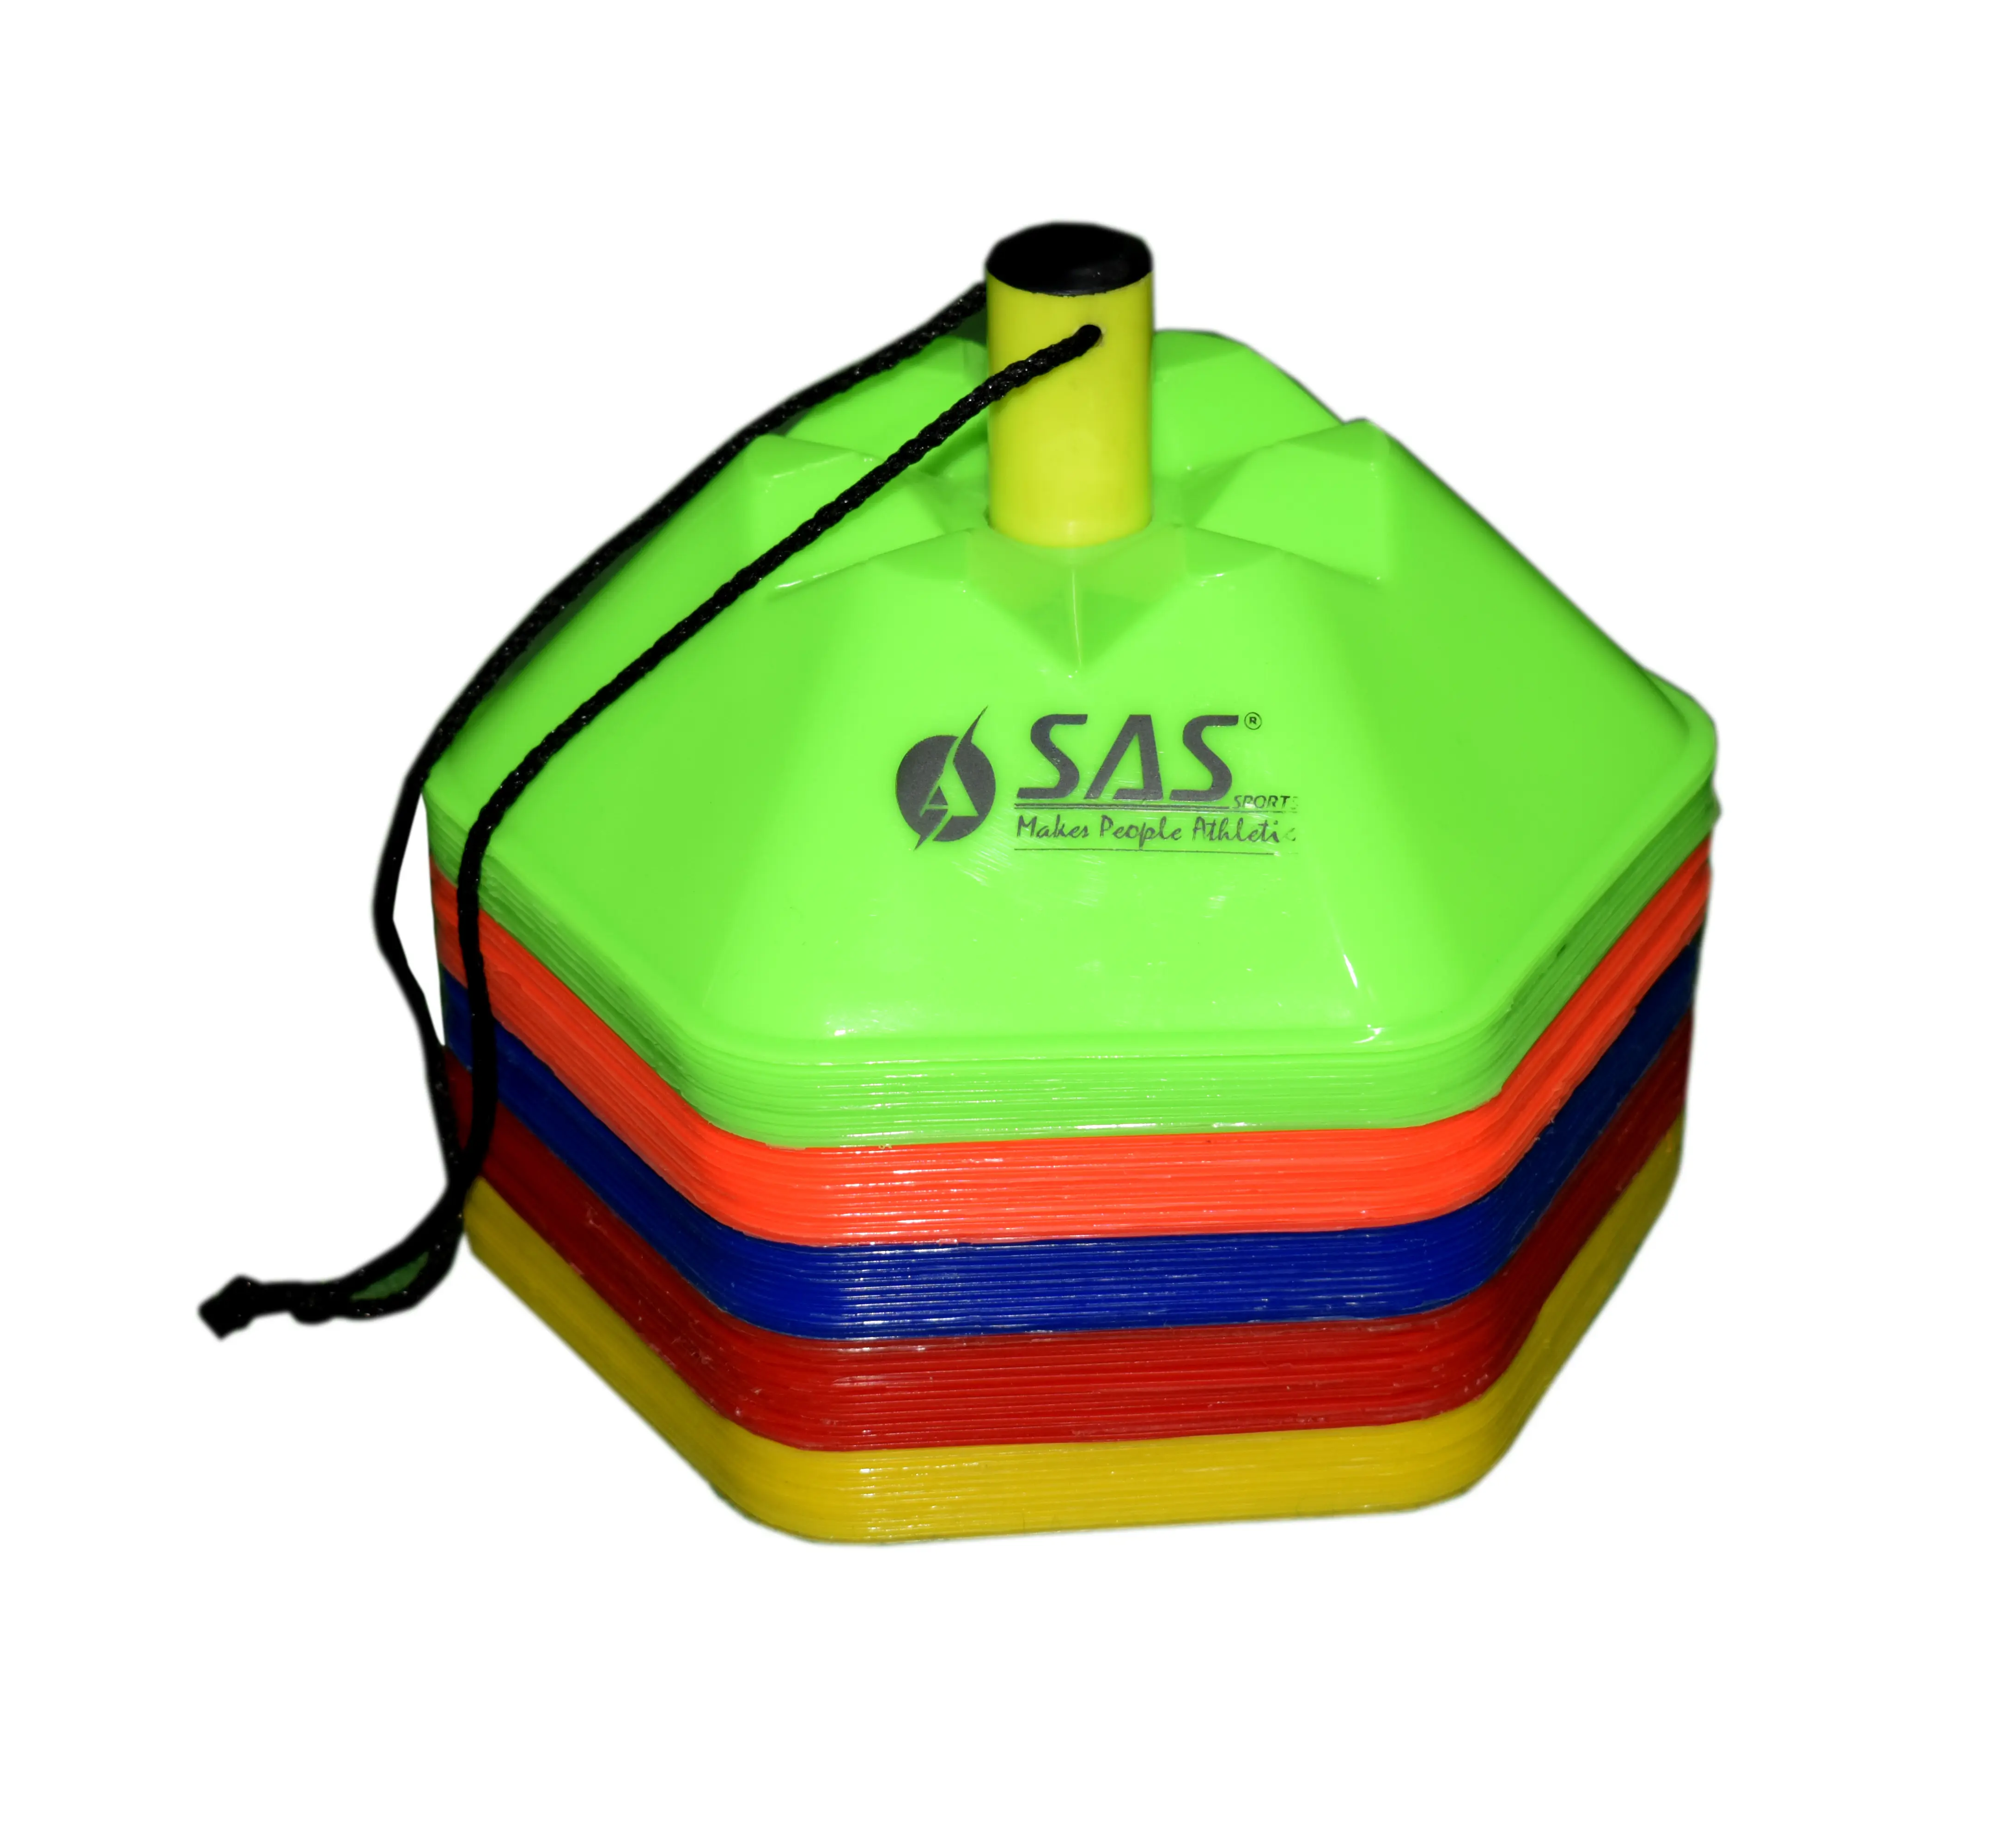 مخروط سداسي لتدريب الرشاقة (مجموعة من 50 قطعة) لمجال كرة القدم تحديد السرعة والتنسيق يحتوي على 50 لونًا متعددًا